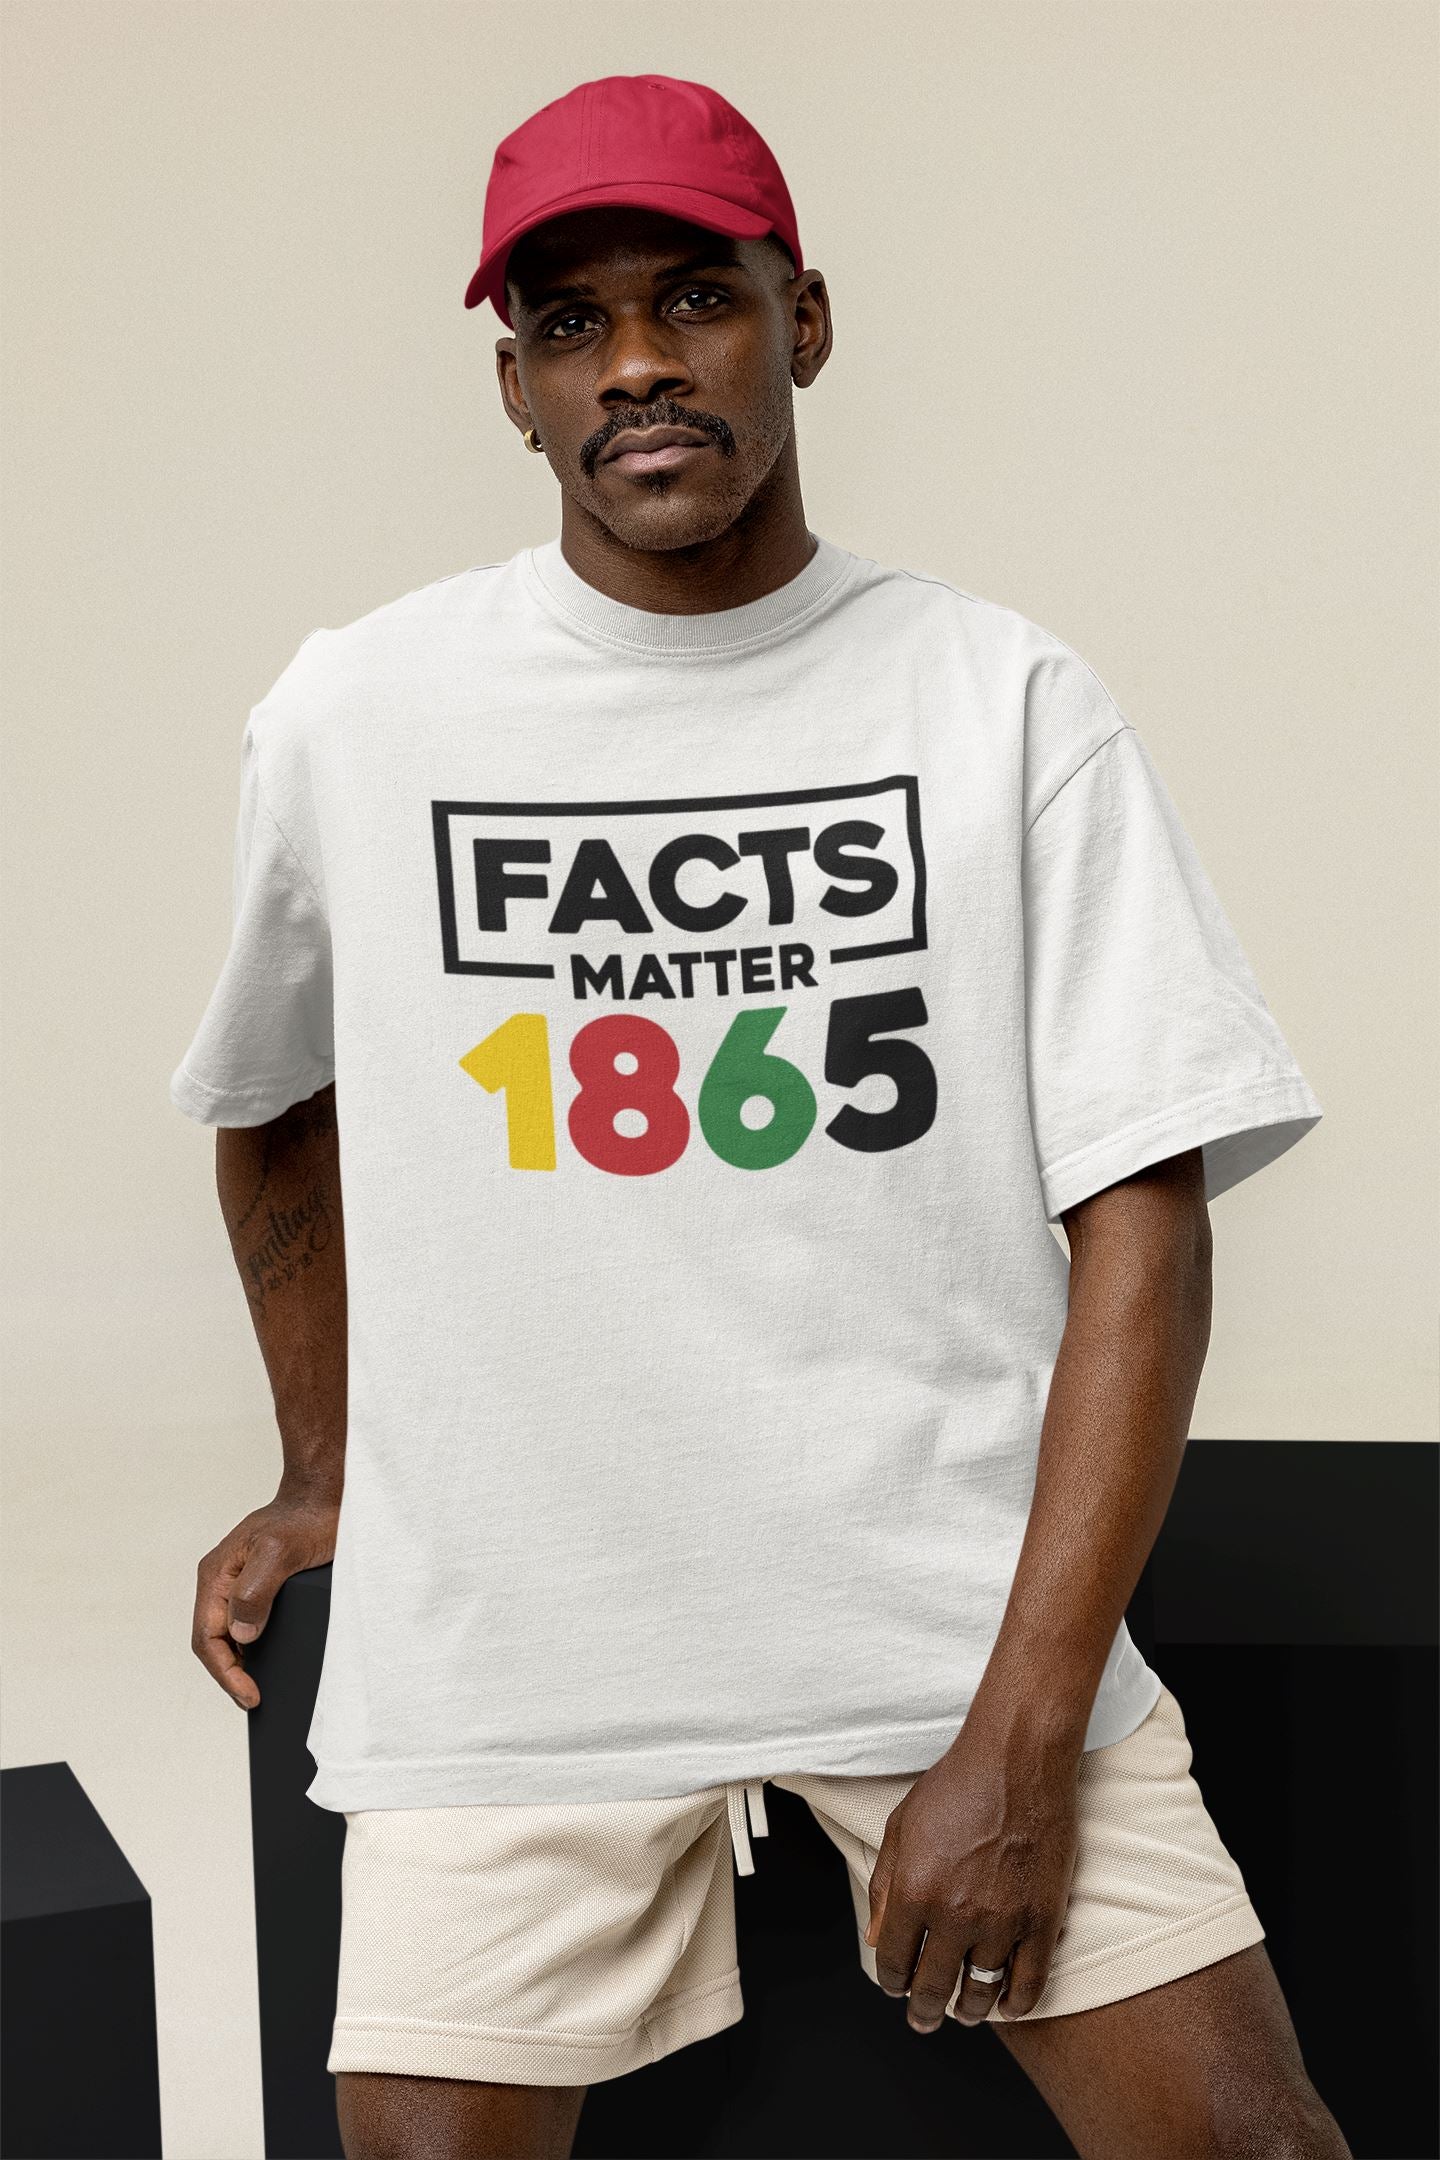 Black Pride T-Shirt, Juneteenth Shirt, Facts Matter, 1865 T-Shirt B1ack By Design LLC 